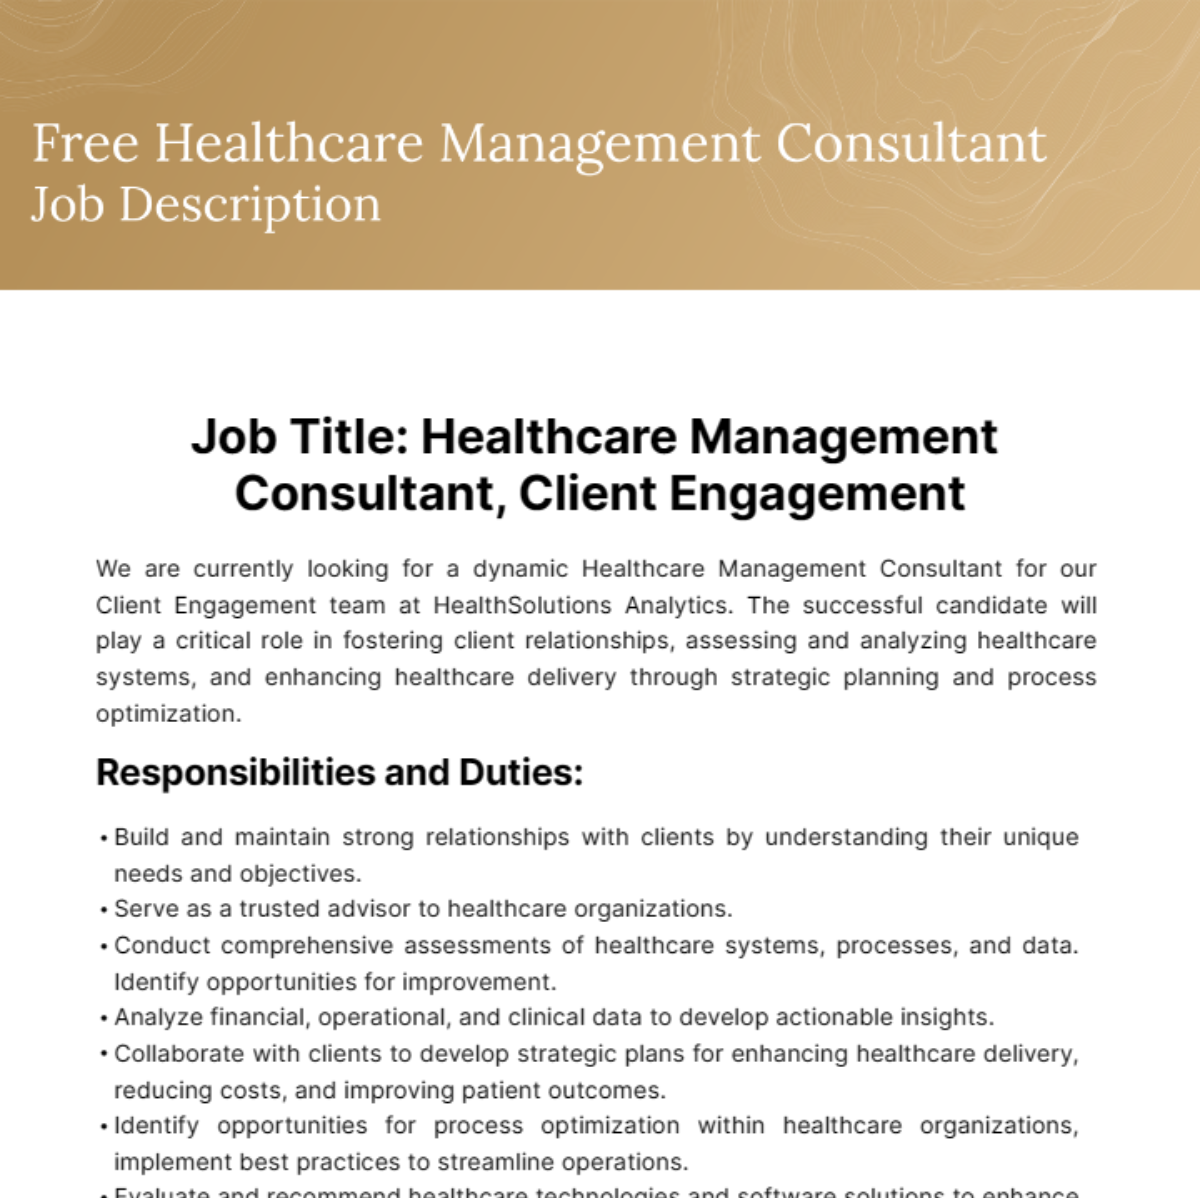 Free Healthcare Management Consultant Job Description Template